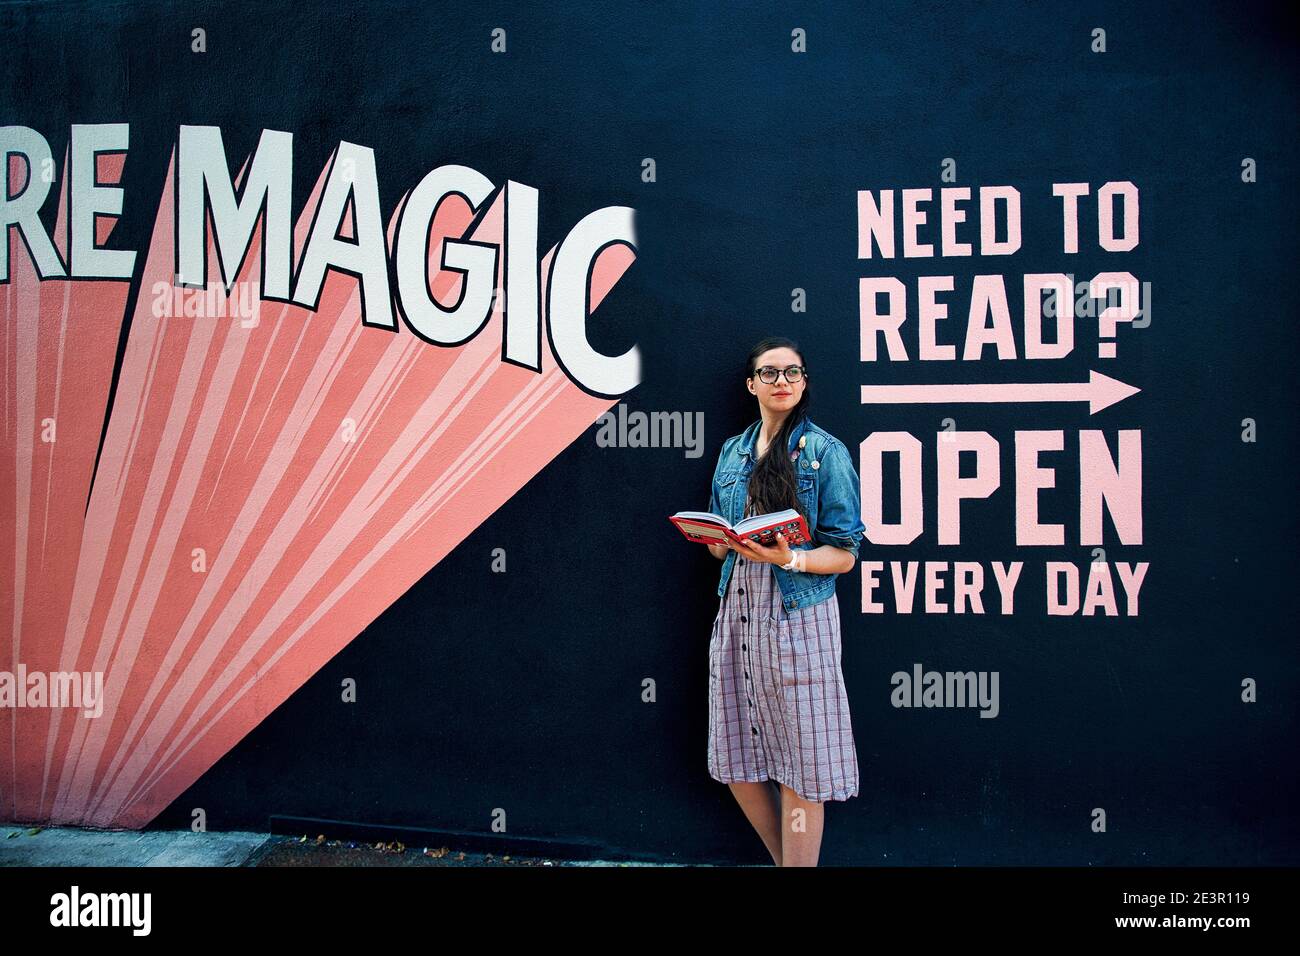 Etats-Unis / New York City /Jeune femme lisant un livre en fron de l'art mural à l'extérieur de la librairie indienne 'Books are Magic' à Brooklyn, New York Banque D'Images